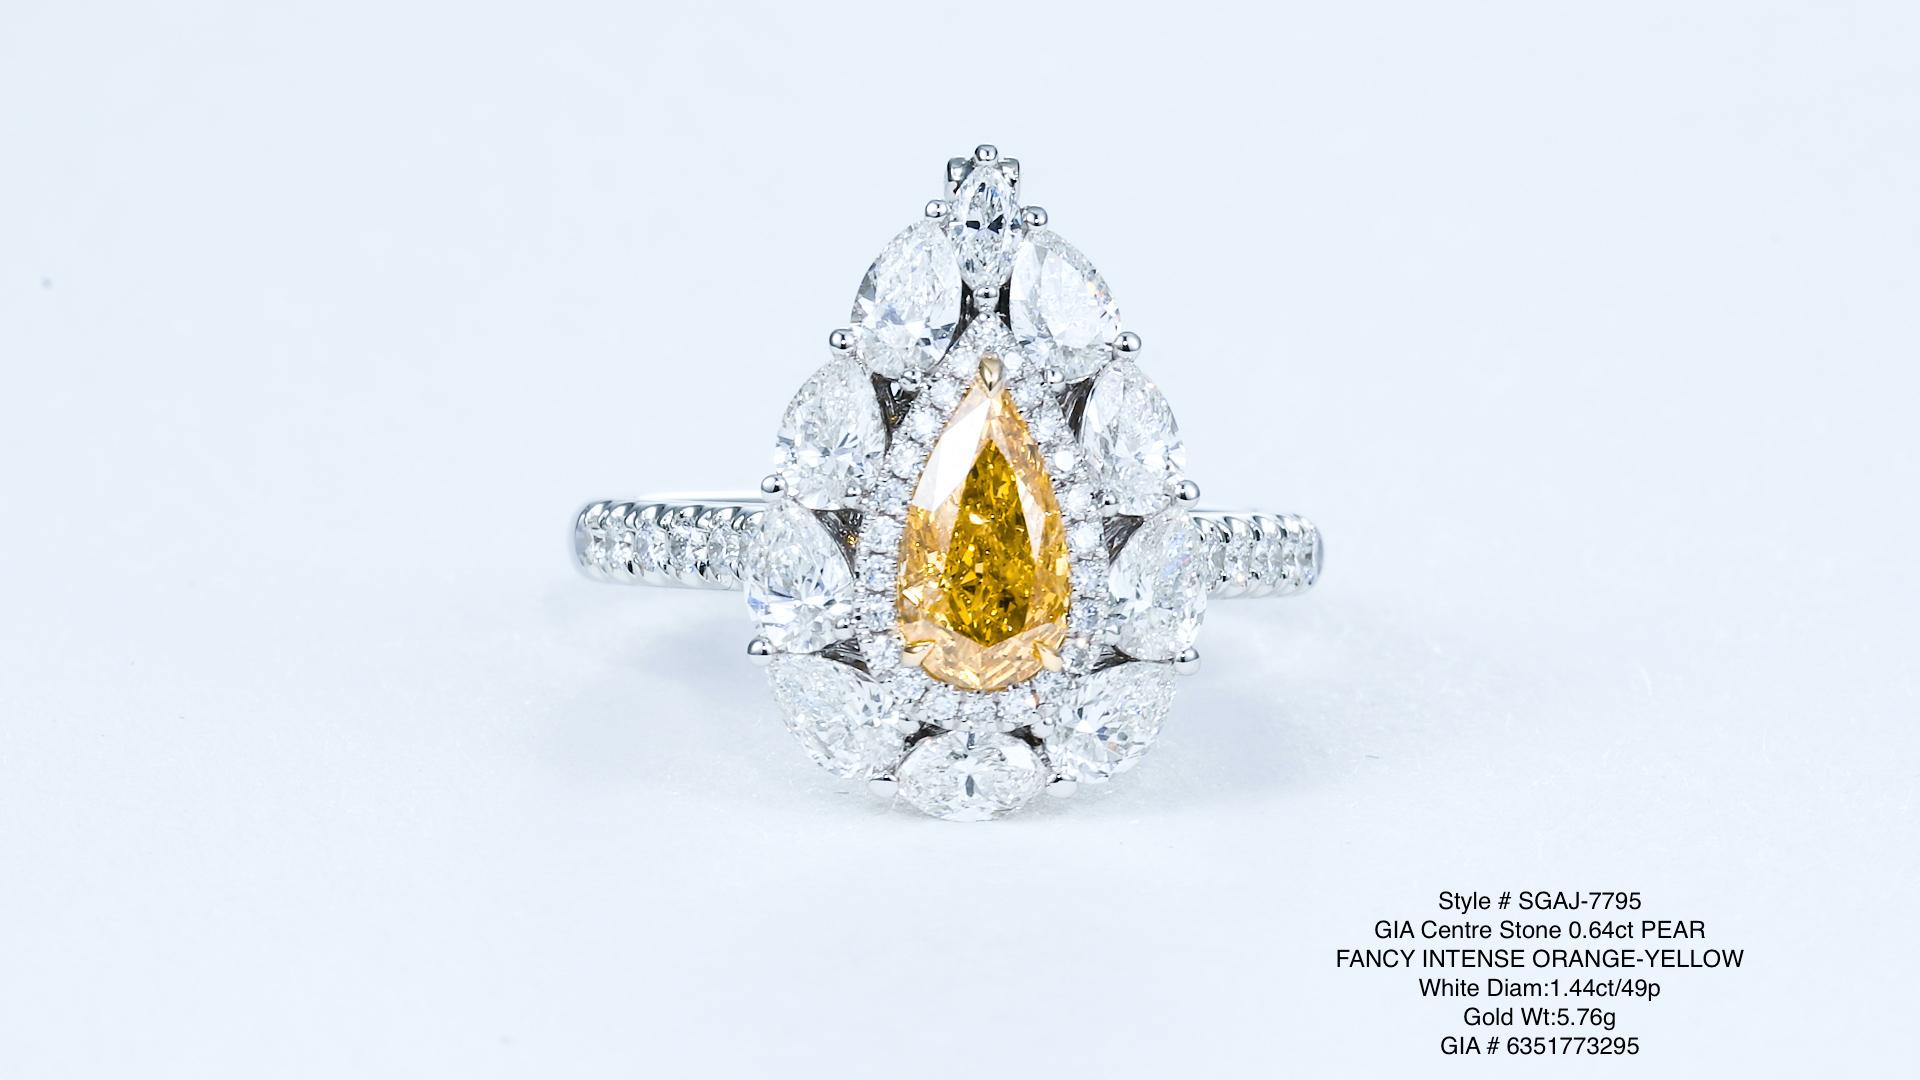 Nous vous présentons un bijou extraordinaire composé d'un remarquable diamant de couleur naturelle jaune orange intense de 0,64 carat, élégamment serti sur une bague en or 18kt. Cette exquise bague en diamant n'est pas seulement un accessoire